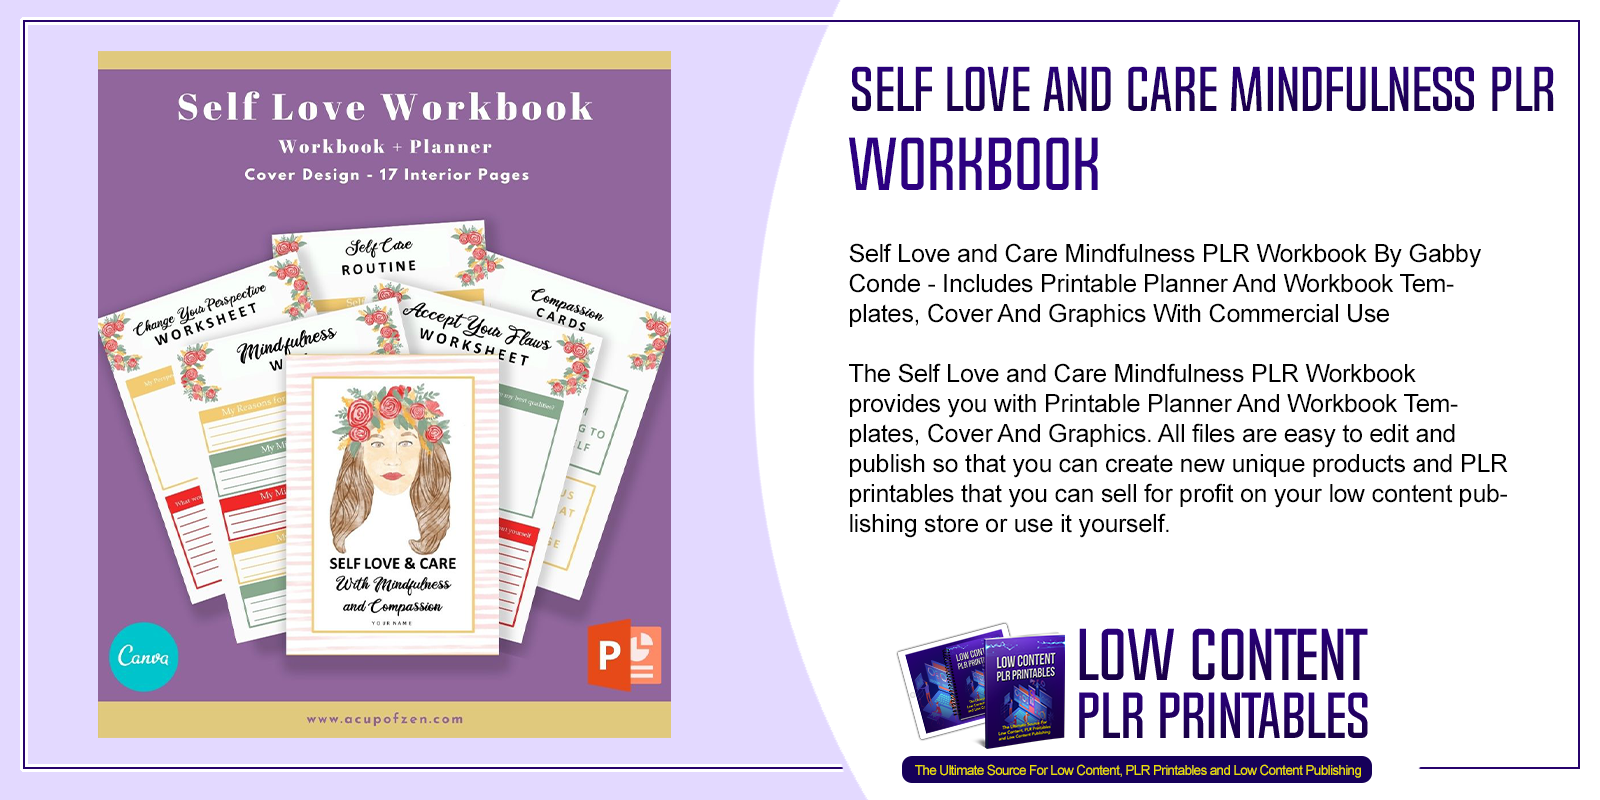 Self Love and Care Mindfulness PLR Workbook